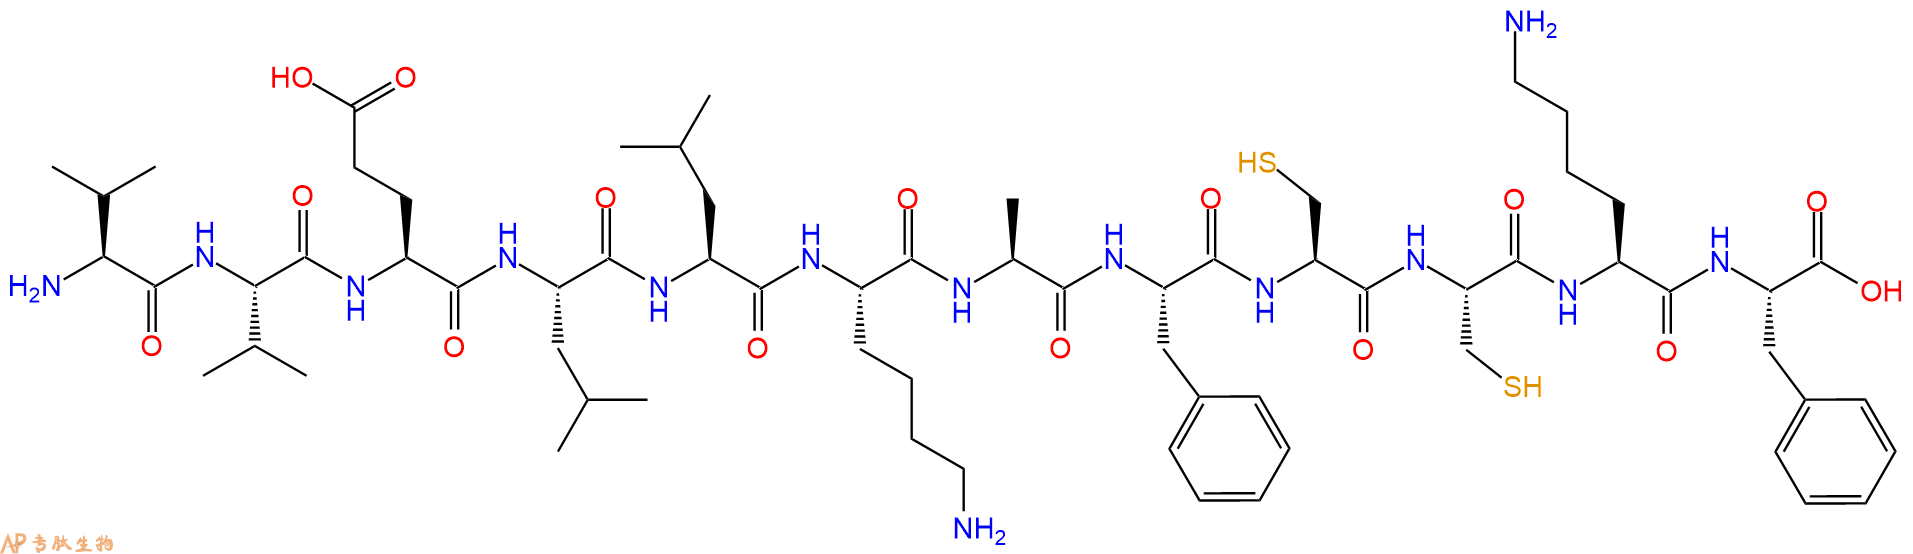 专肽生物产品十二肽VVELLKAFCCKF